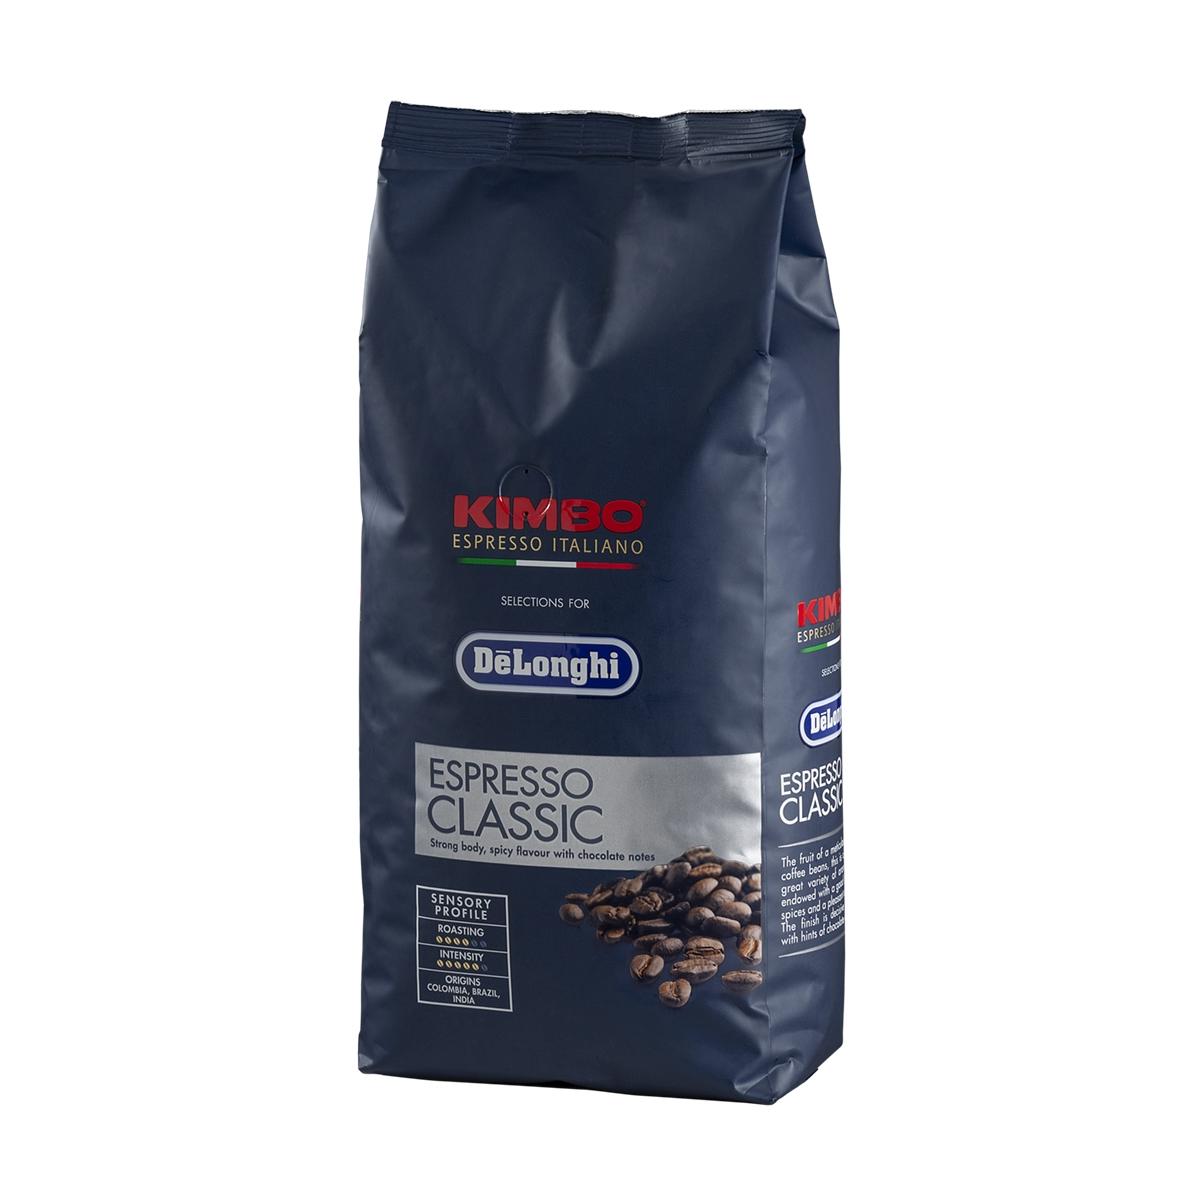 Купить зерновой кофе для кофемашины недорого. Кимбо кофе в зернах. Kimbo кофе в зернах. Кофе Kimbo Espresso 100 Arabica 1кг. Кофе в зернах Kimbo производитель.